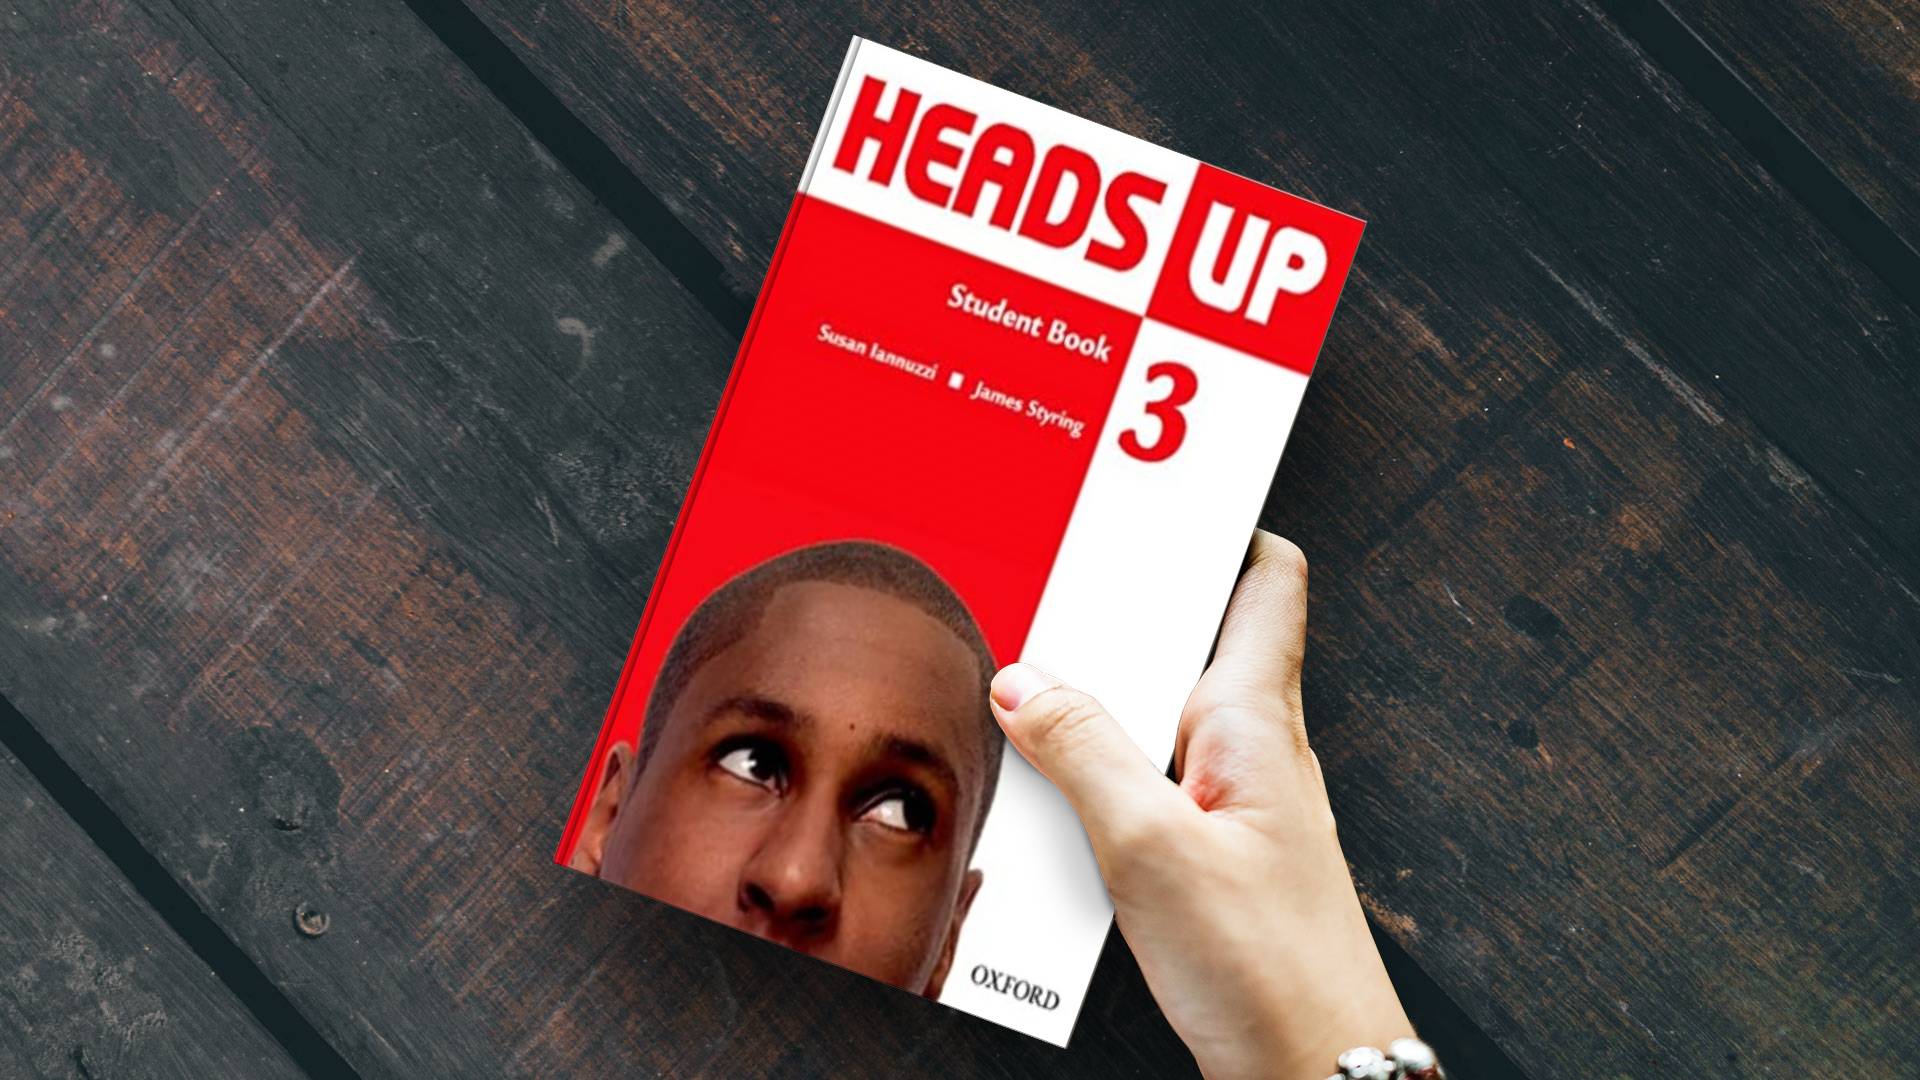 خرید کتاب زبان | کتاب زبان اصلی | Heads Up 3 | هدز آپ سه